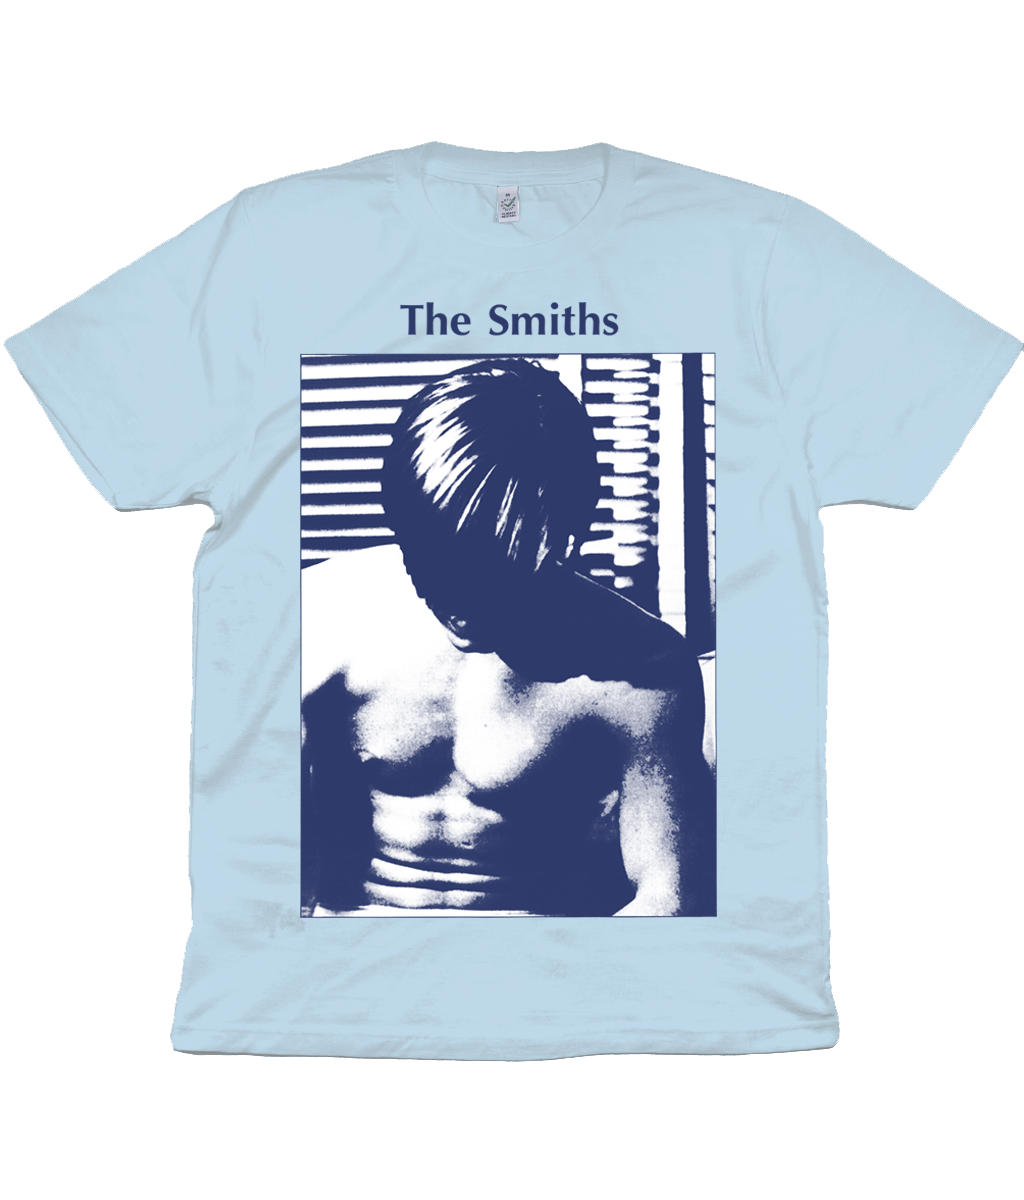 The Smiths - The Smiths - 1984 - Blue & White